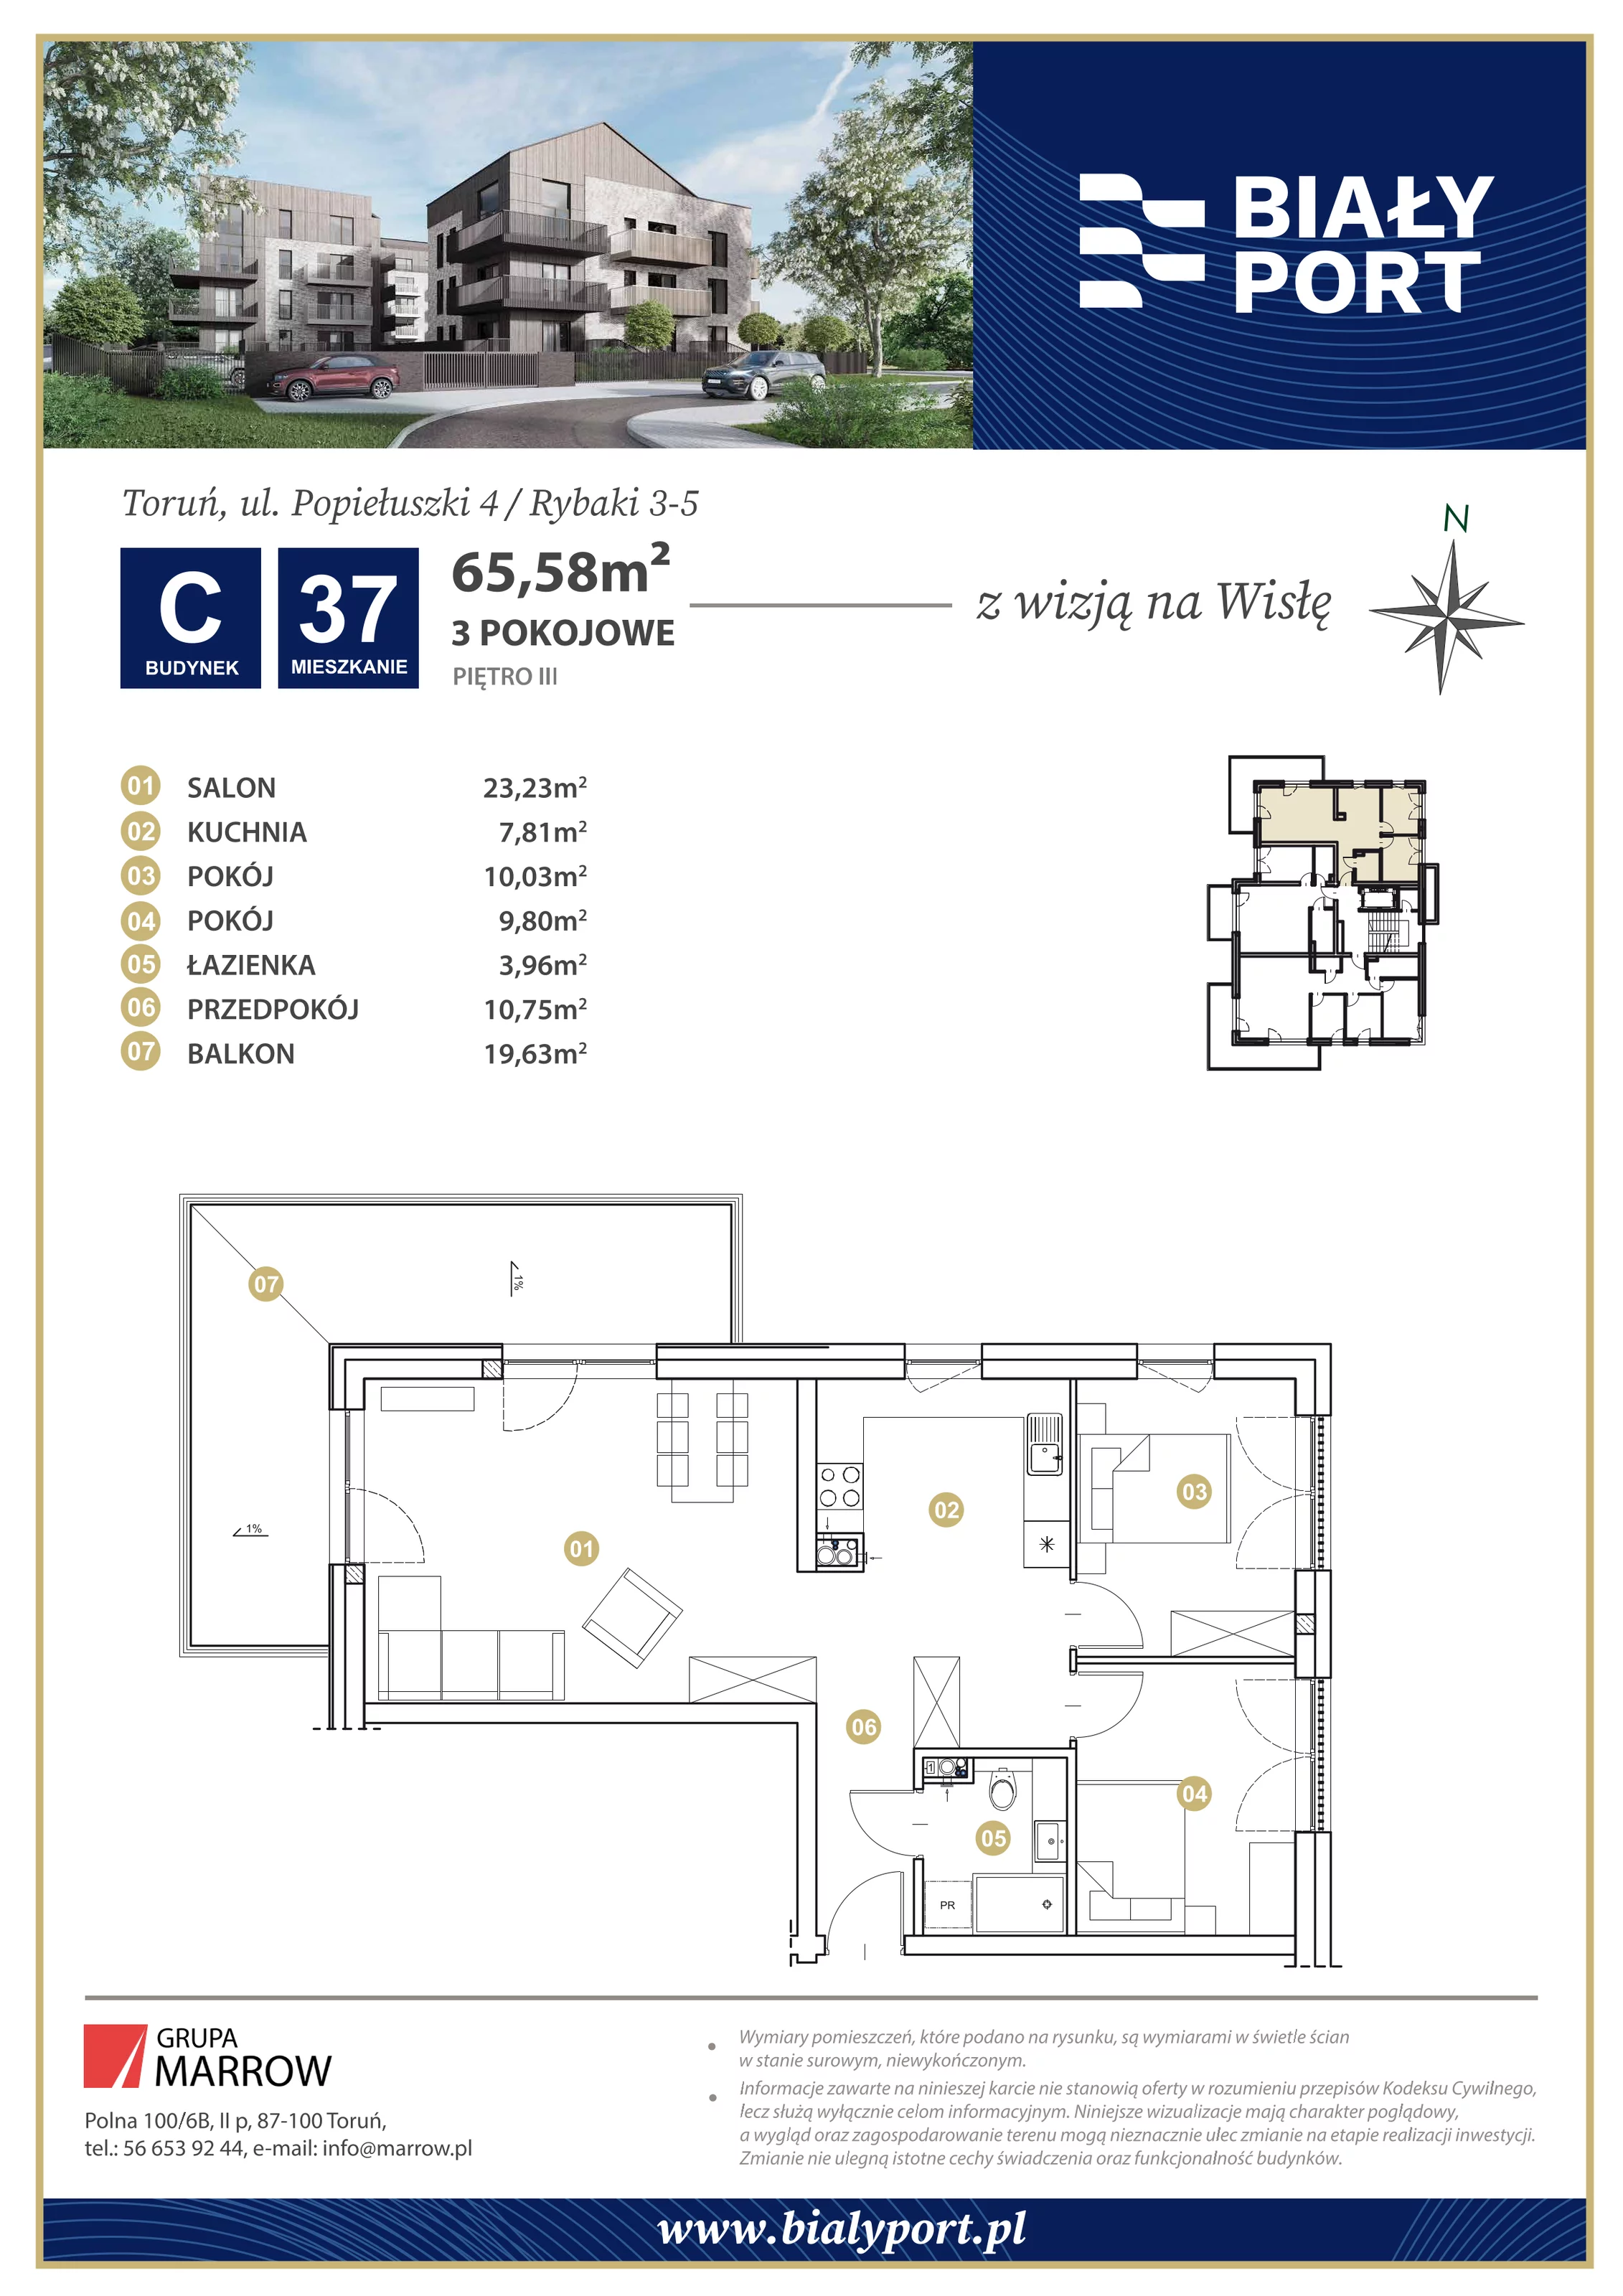 Mieszkanie 65,58 m², piętro 3, oferta nr 37, Biały Port, Toruń, Rybaki, ul. Popiełuszki 4